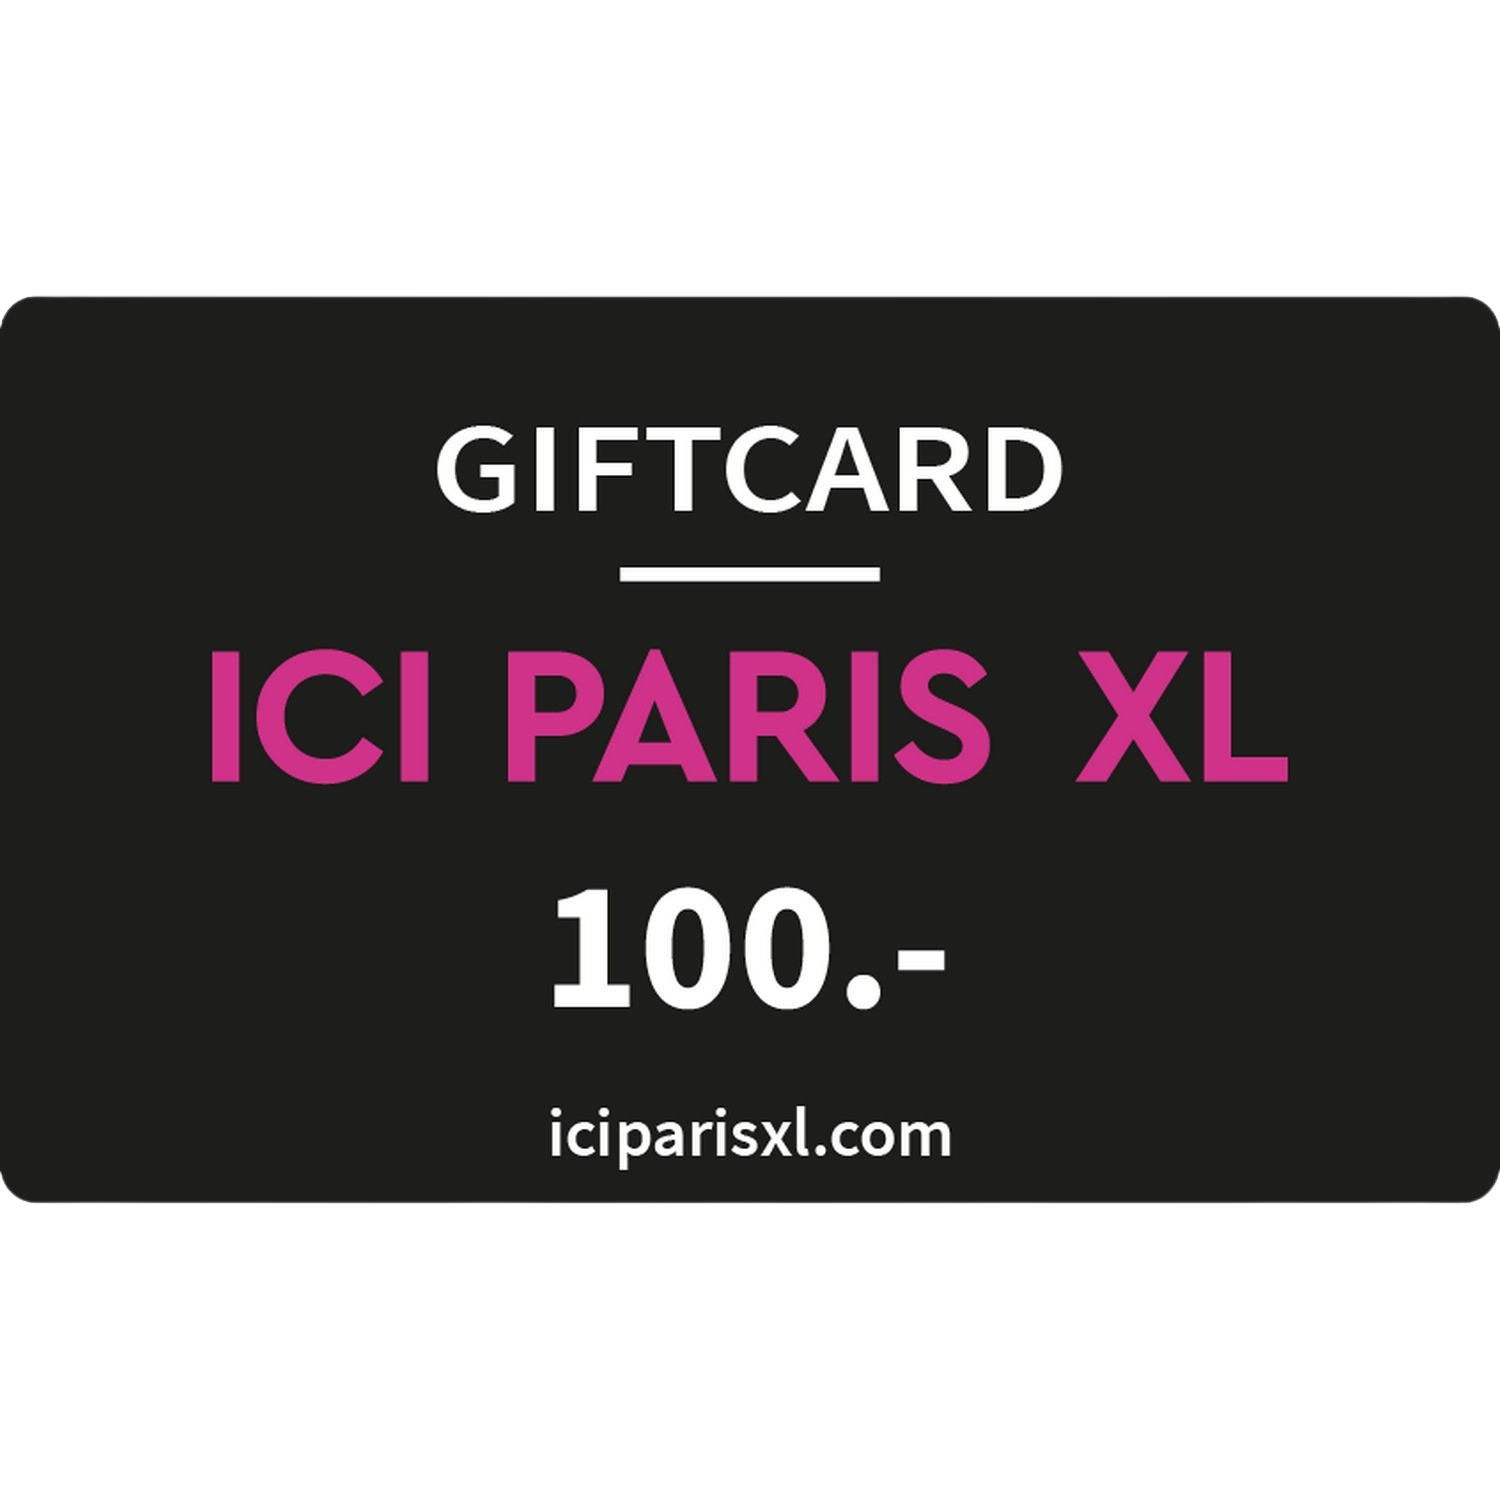 Ici Paris Xl Giftcard 100 Euro